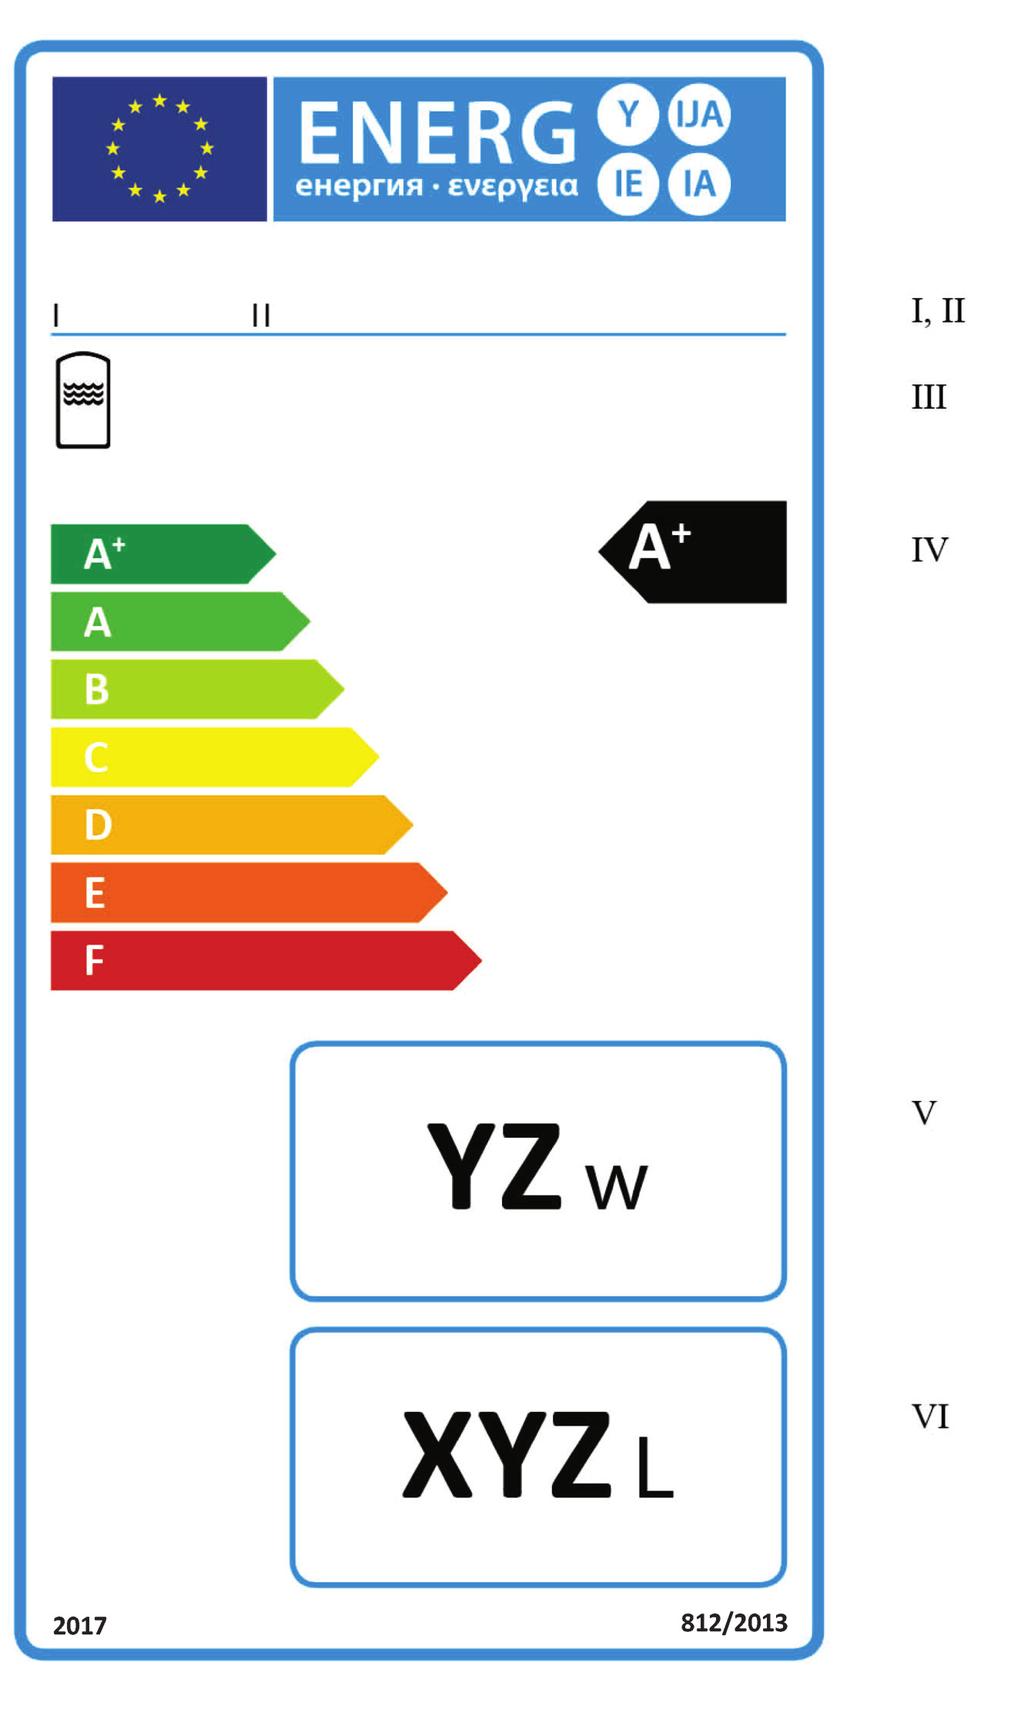 6.9.2013 Jurnalul Oficial al Uniunii Europene L 239/103 2.2. Eticheta 2 pentru rezervoarele de apă caldă din clasele de randament energetic A + -F (a) Eticheta trebuie să conțină informațiile enumerate la punctul 2.